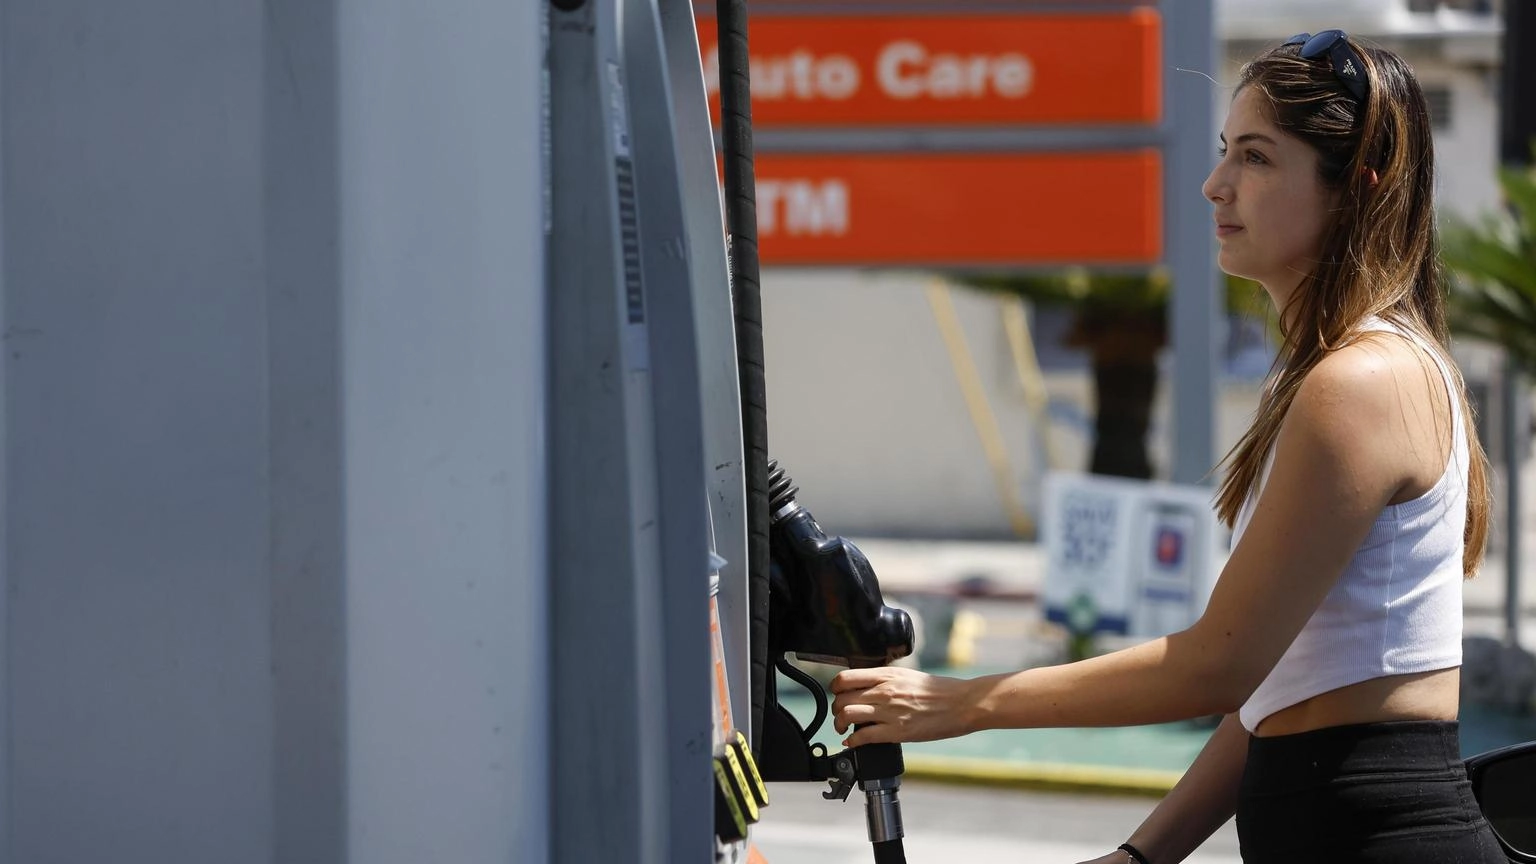 Prezzi di benzina e gasolio in forte aumento